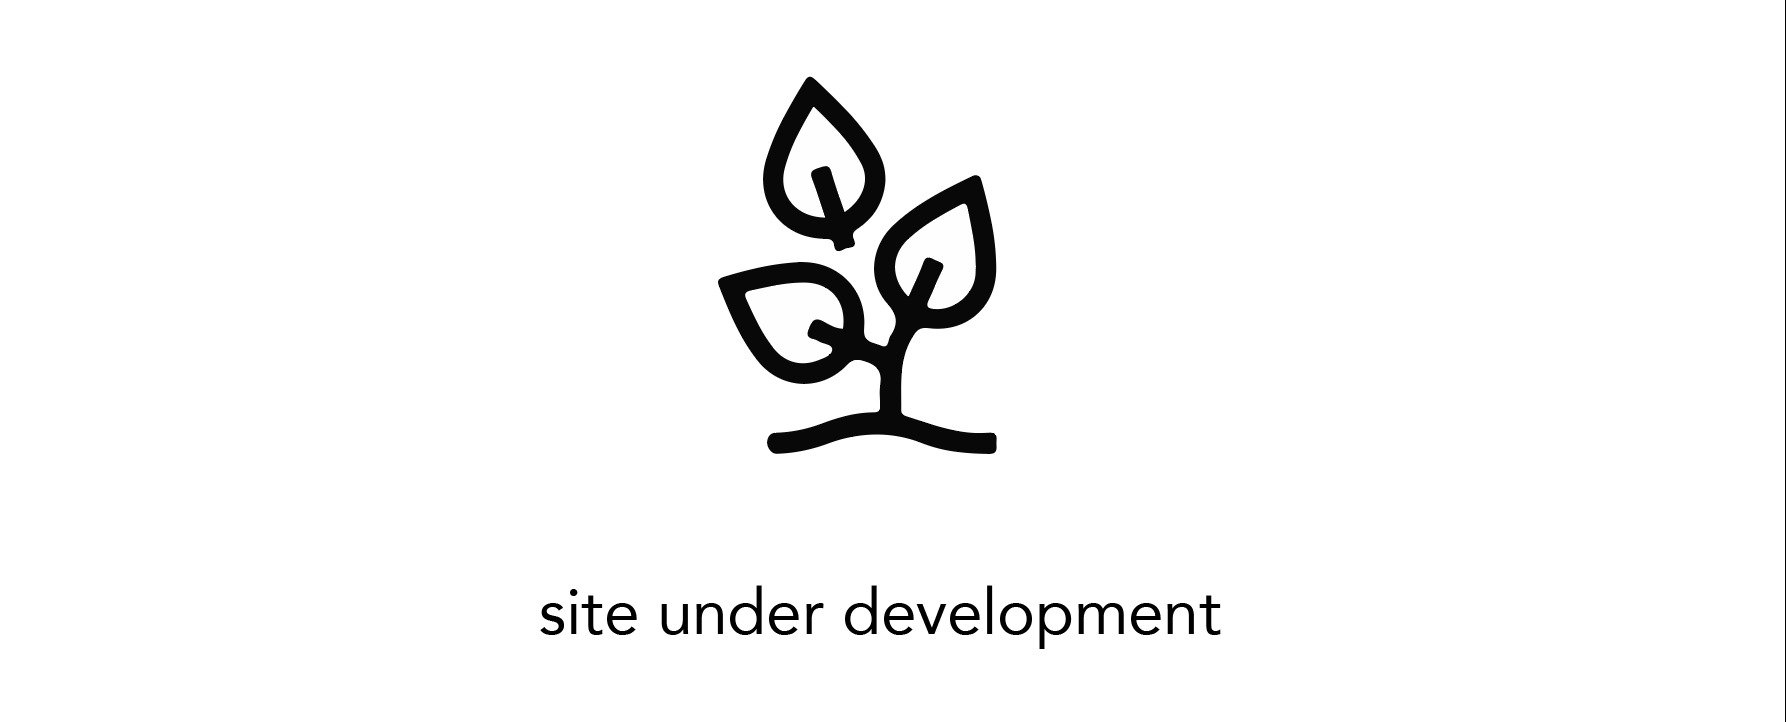 site under development